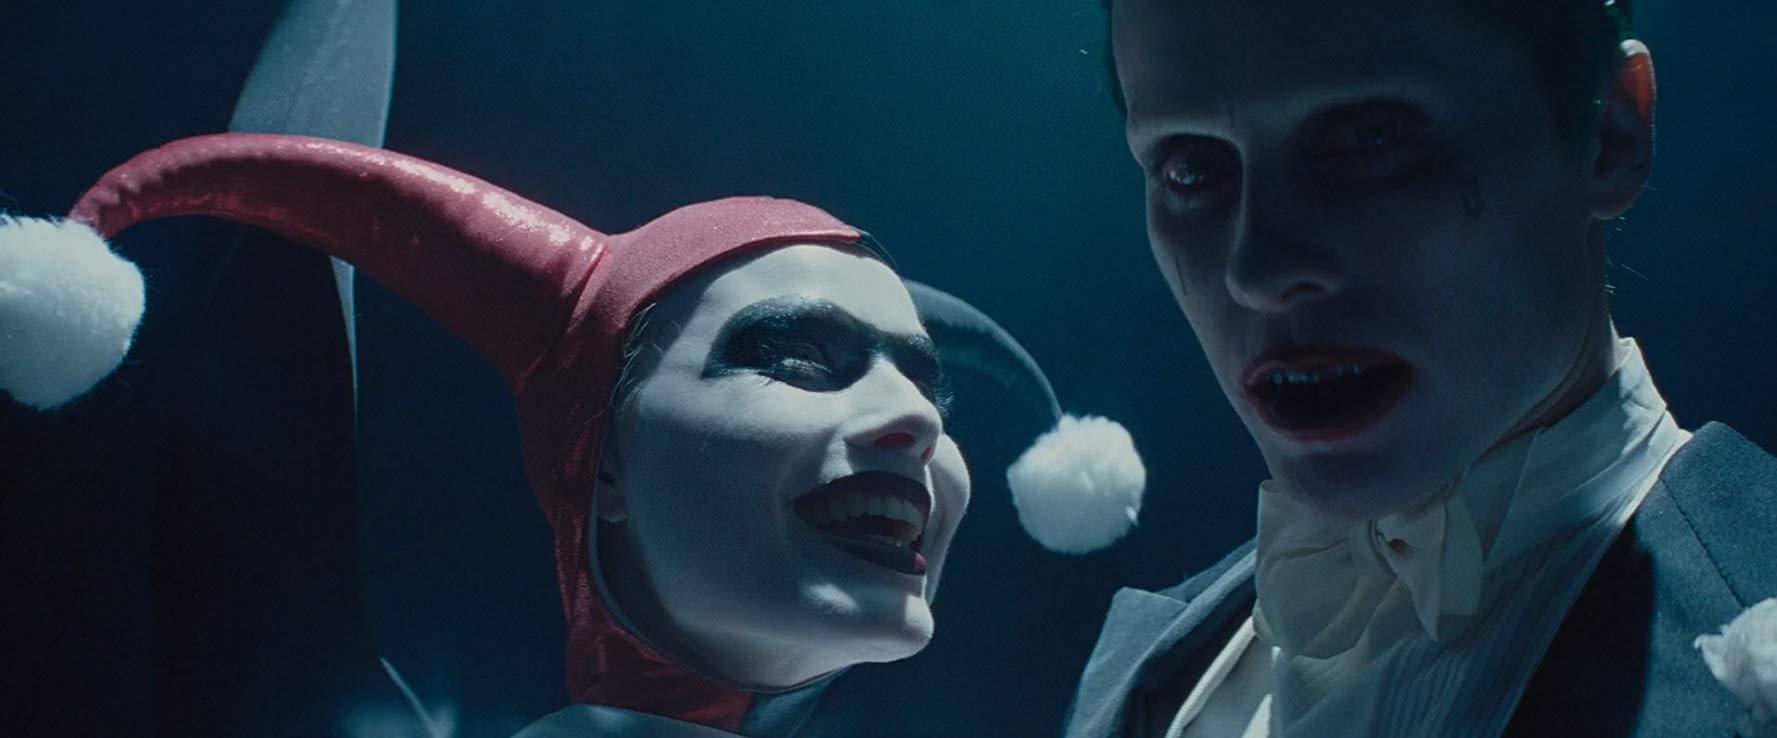 RUMOR: The Joker/Harley Quinn Movie and the Leto Joker Movie on Hold